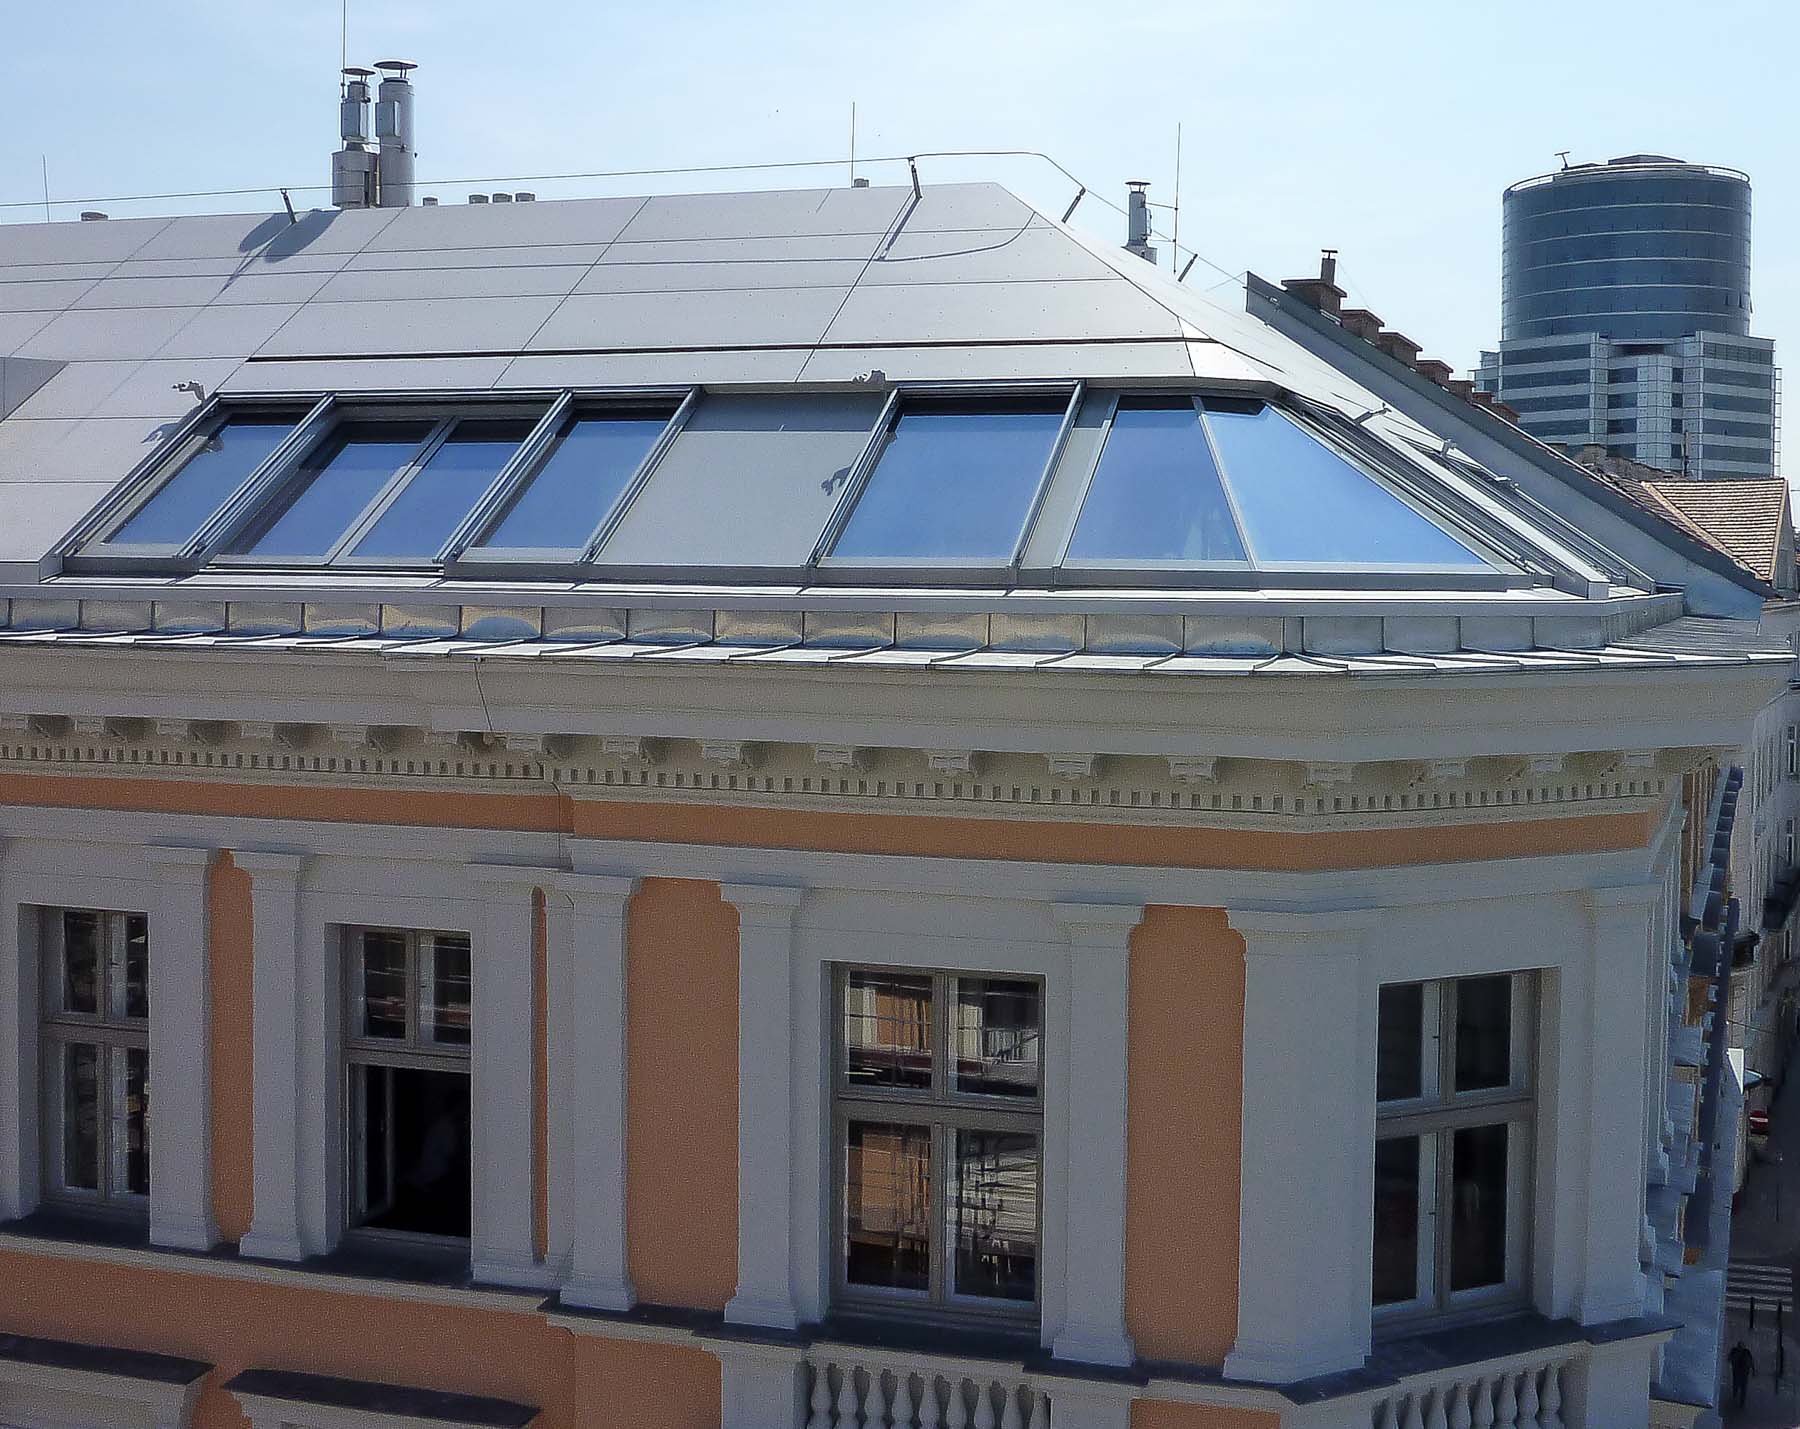 Cockpitverglasung mit Panorama Dachfenster in Wien (Objekt 1113).